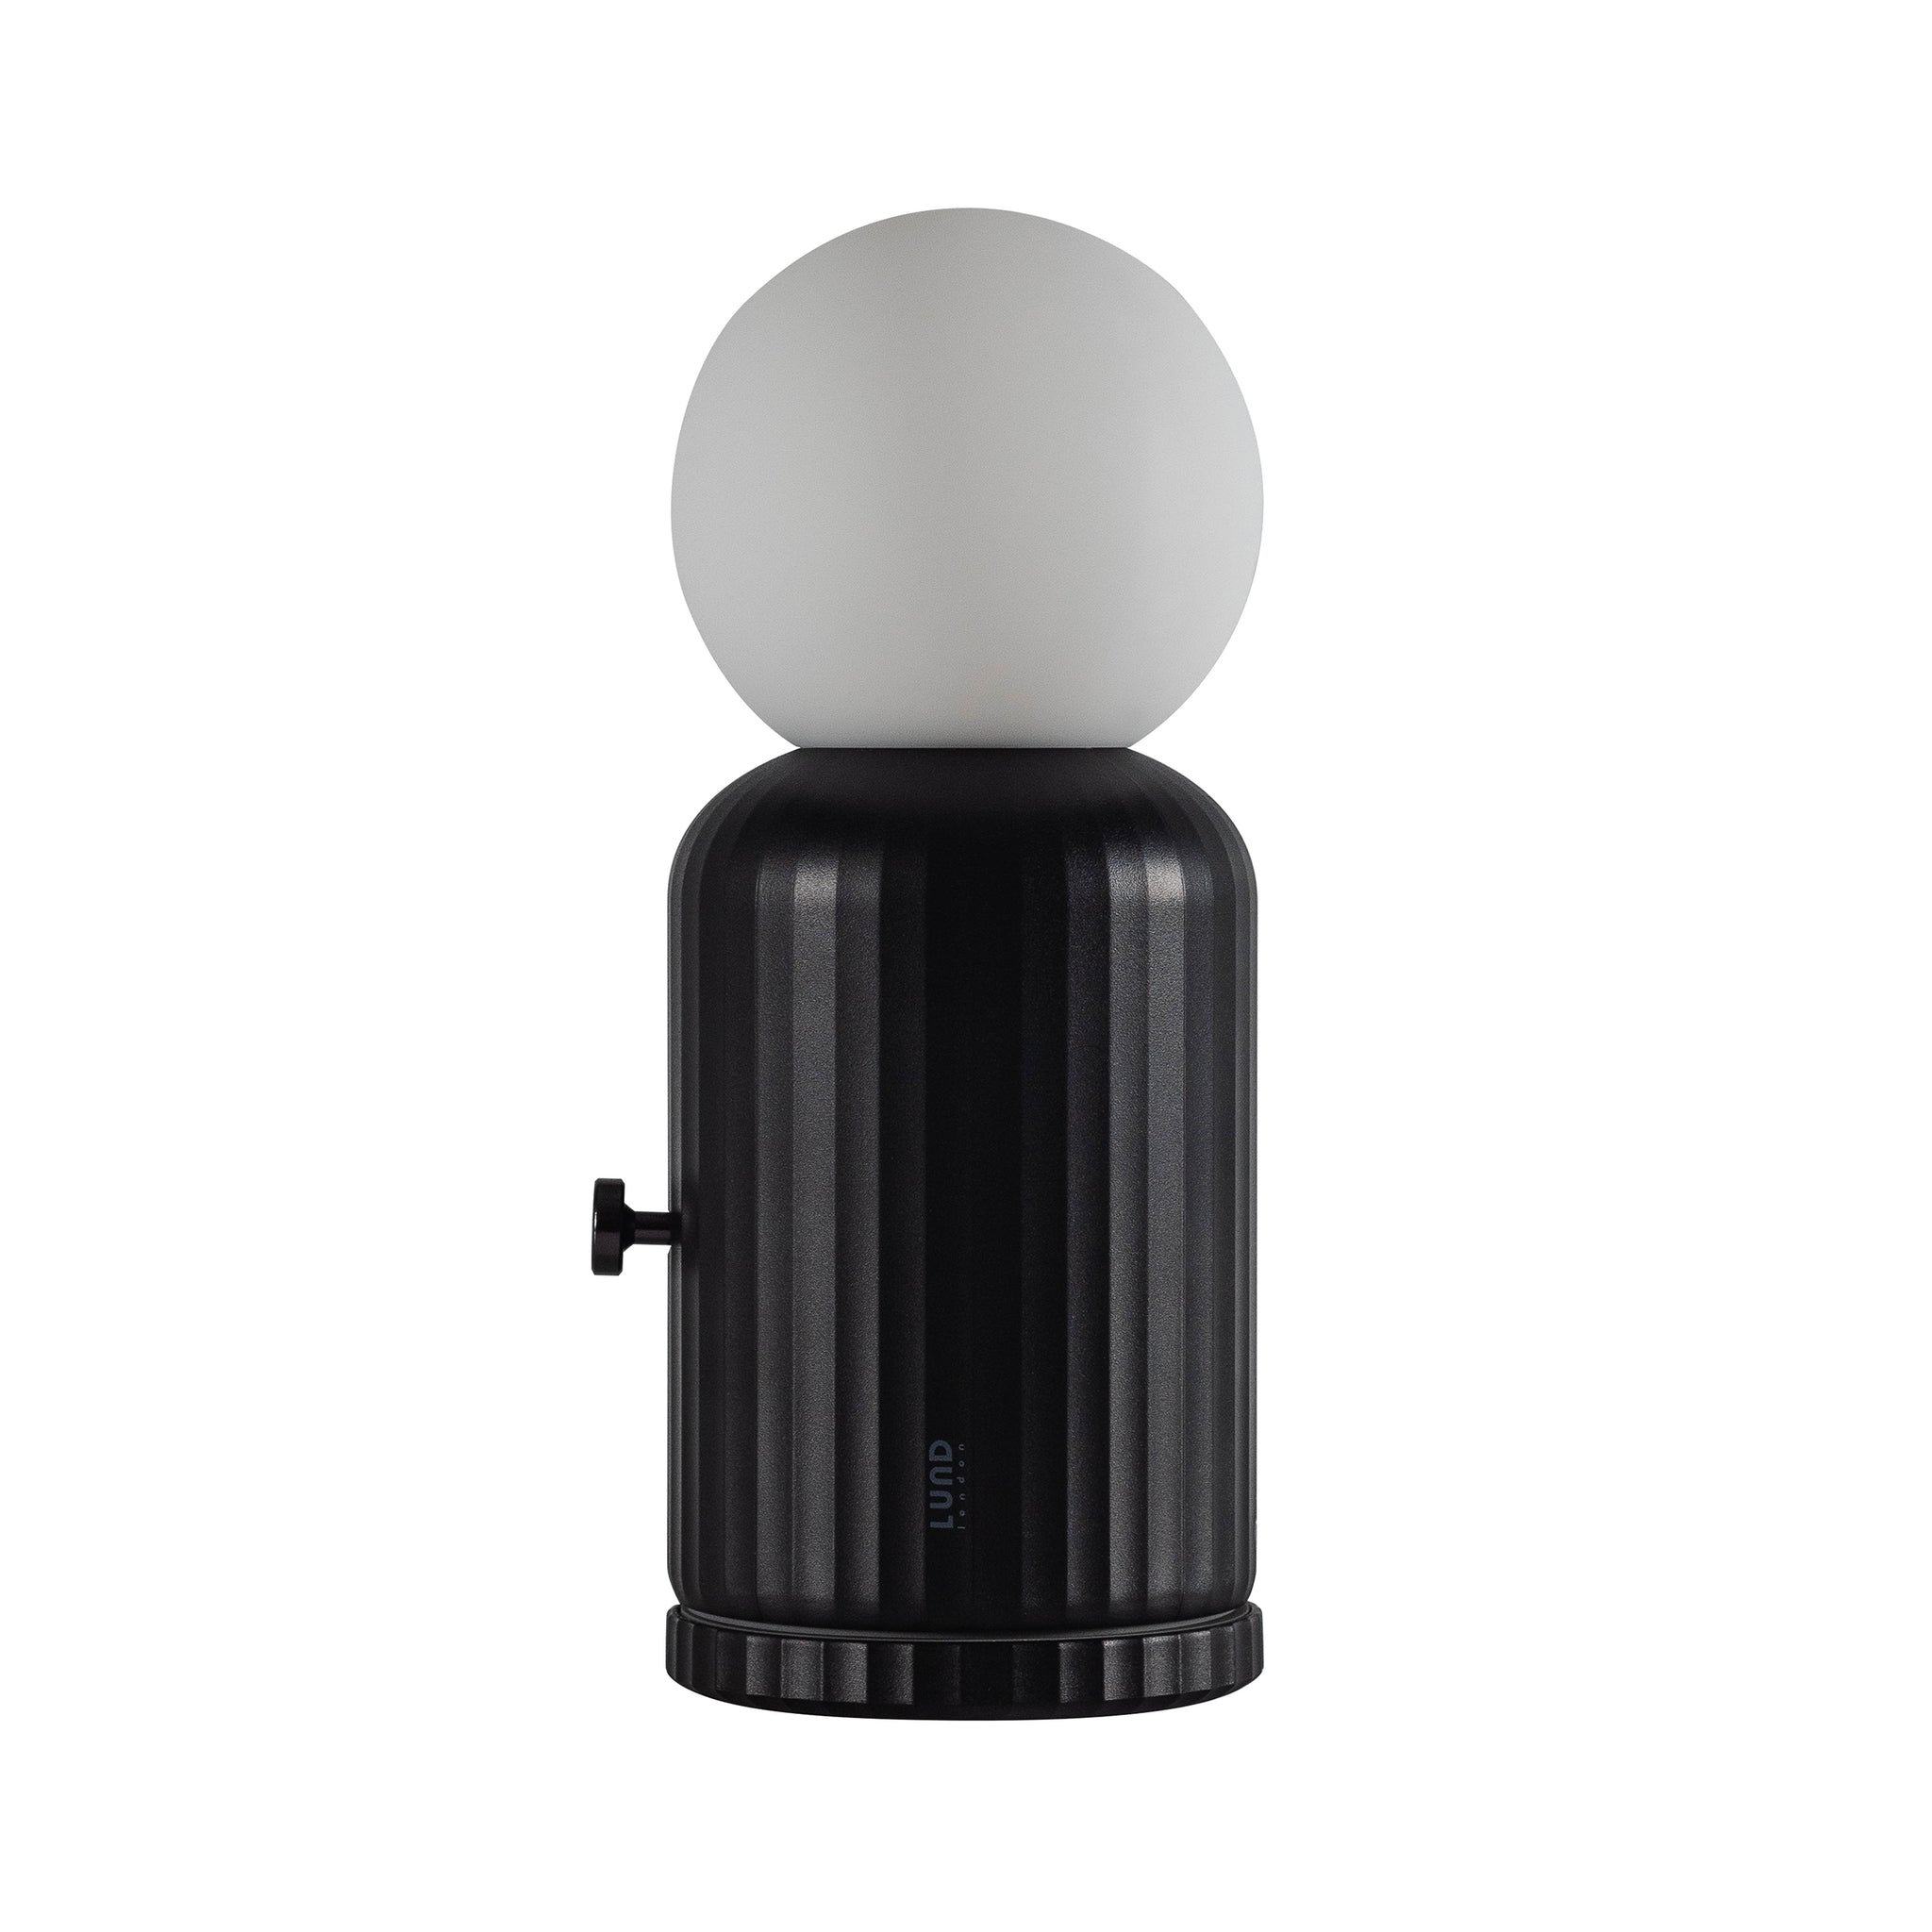 Skittle Oplaadbare Lamp Zwart│Lund London│Draadloos│foto witte achtergrond met draaiknop aan zijkant